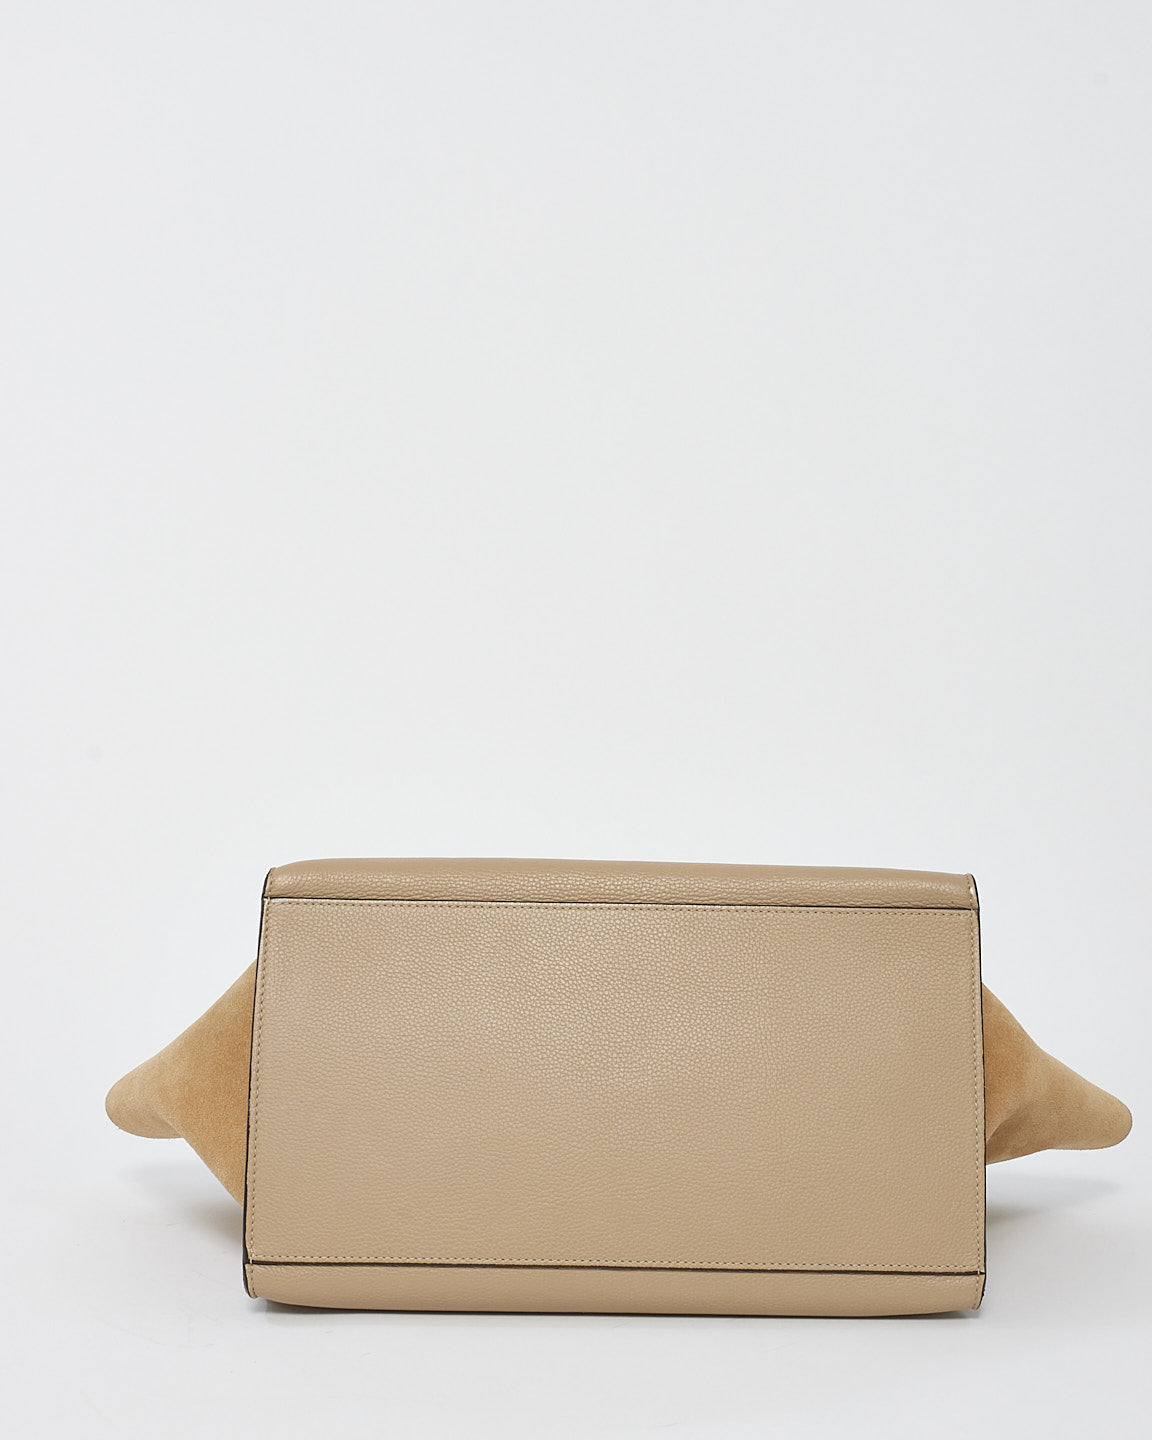 Celine Beige Leather & Suede Medium Trapeze Bag